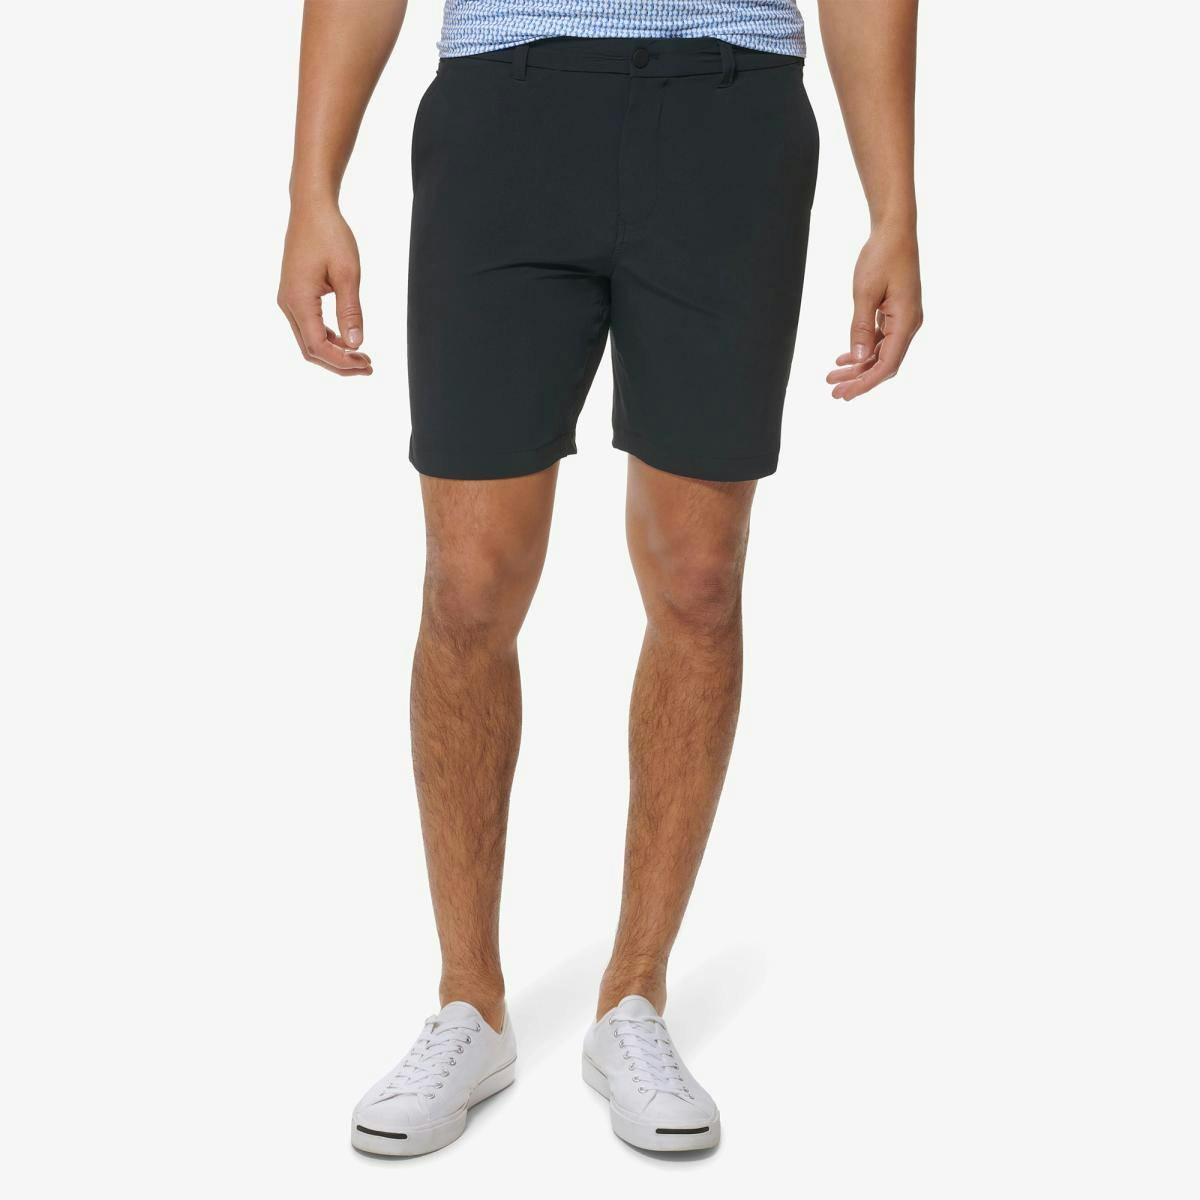 Helmsman Shorts - Product Image 1